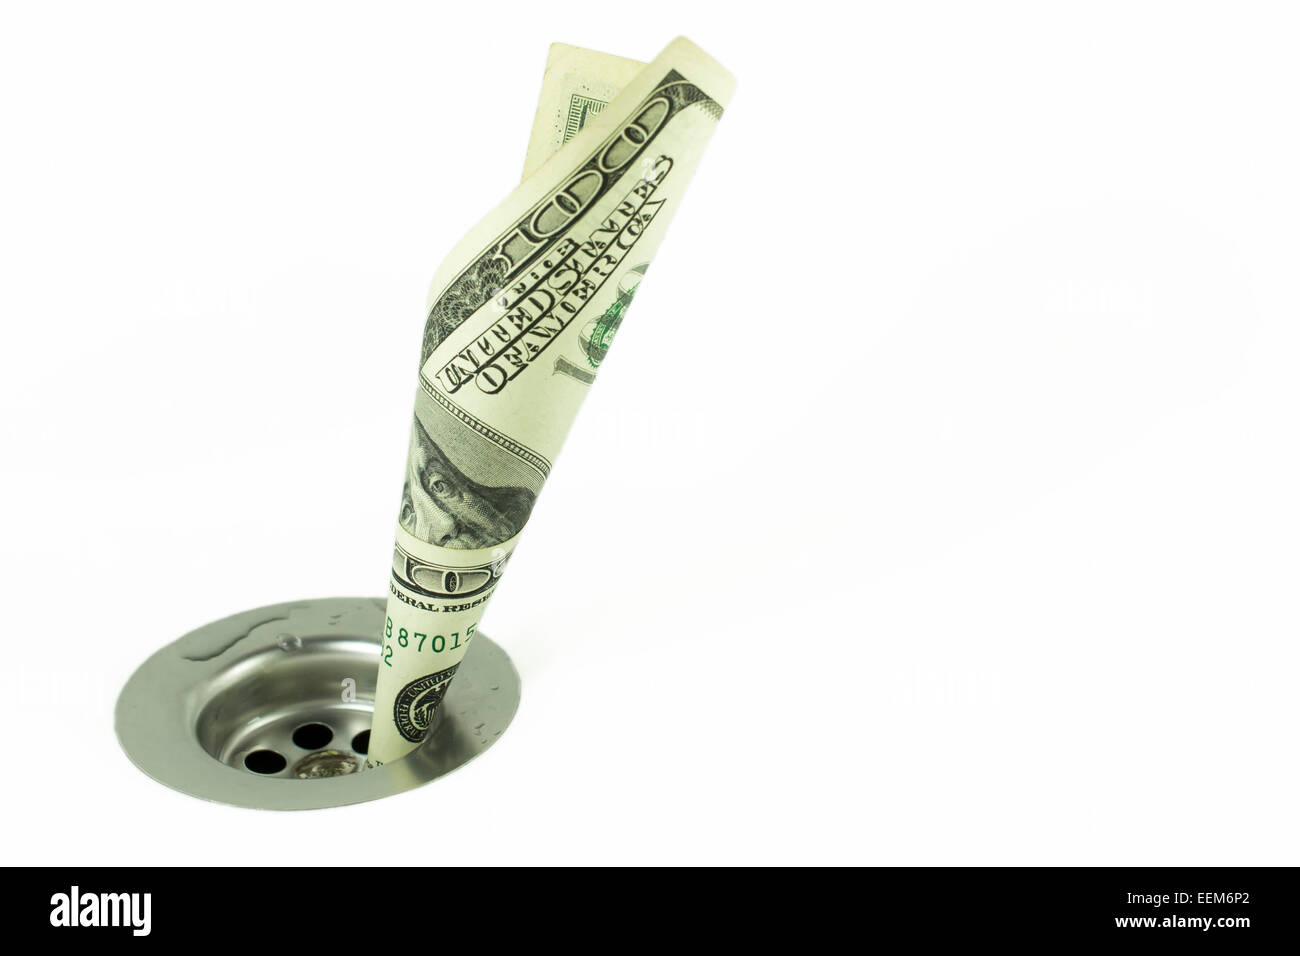 Hundert-Dollar-Schein verdreht und eingefügt durch ein Loch von einem Waschbecken Abfluss, Konzept für Geld und finanzielle Probleme Stockfoto